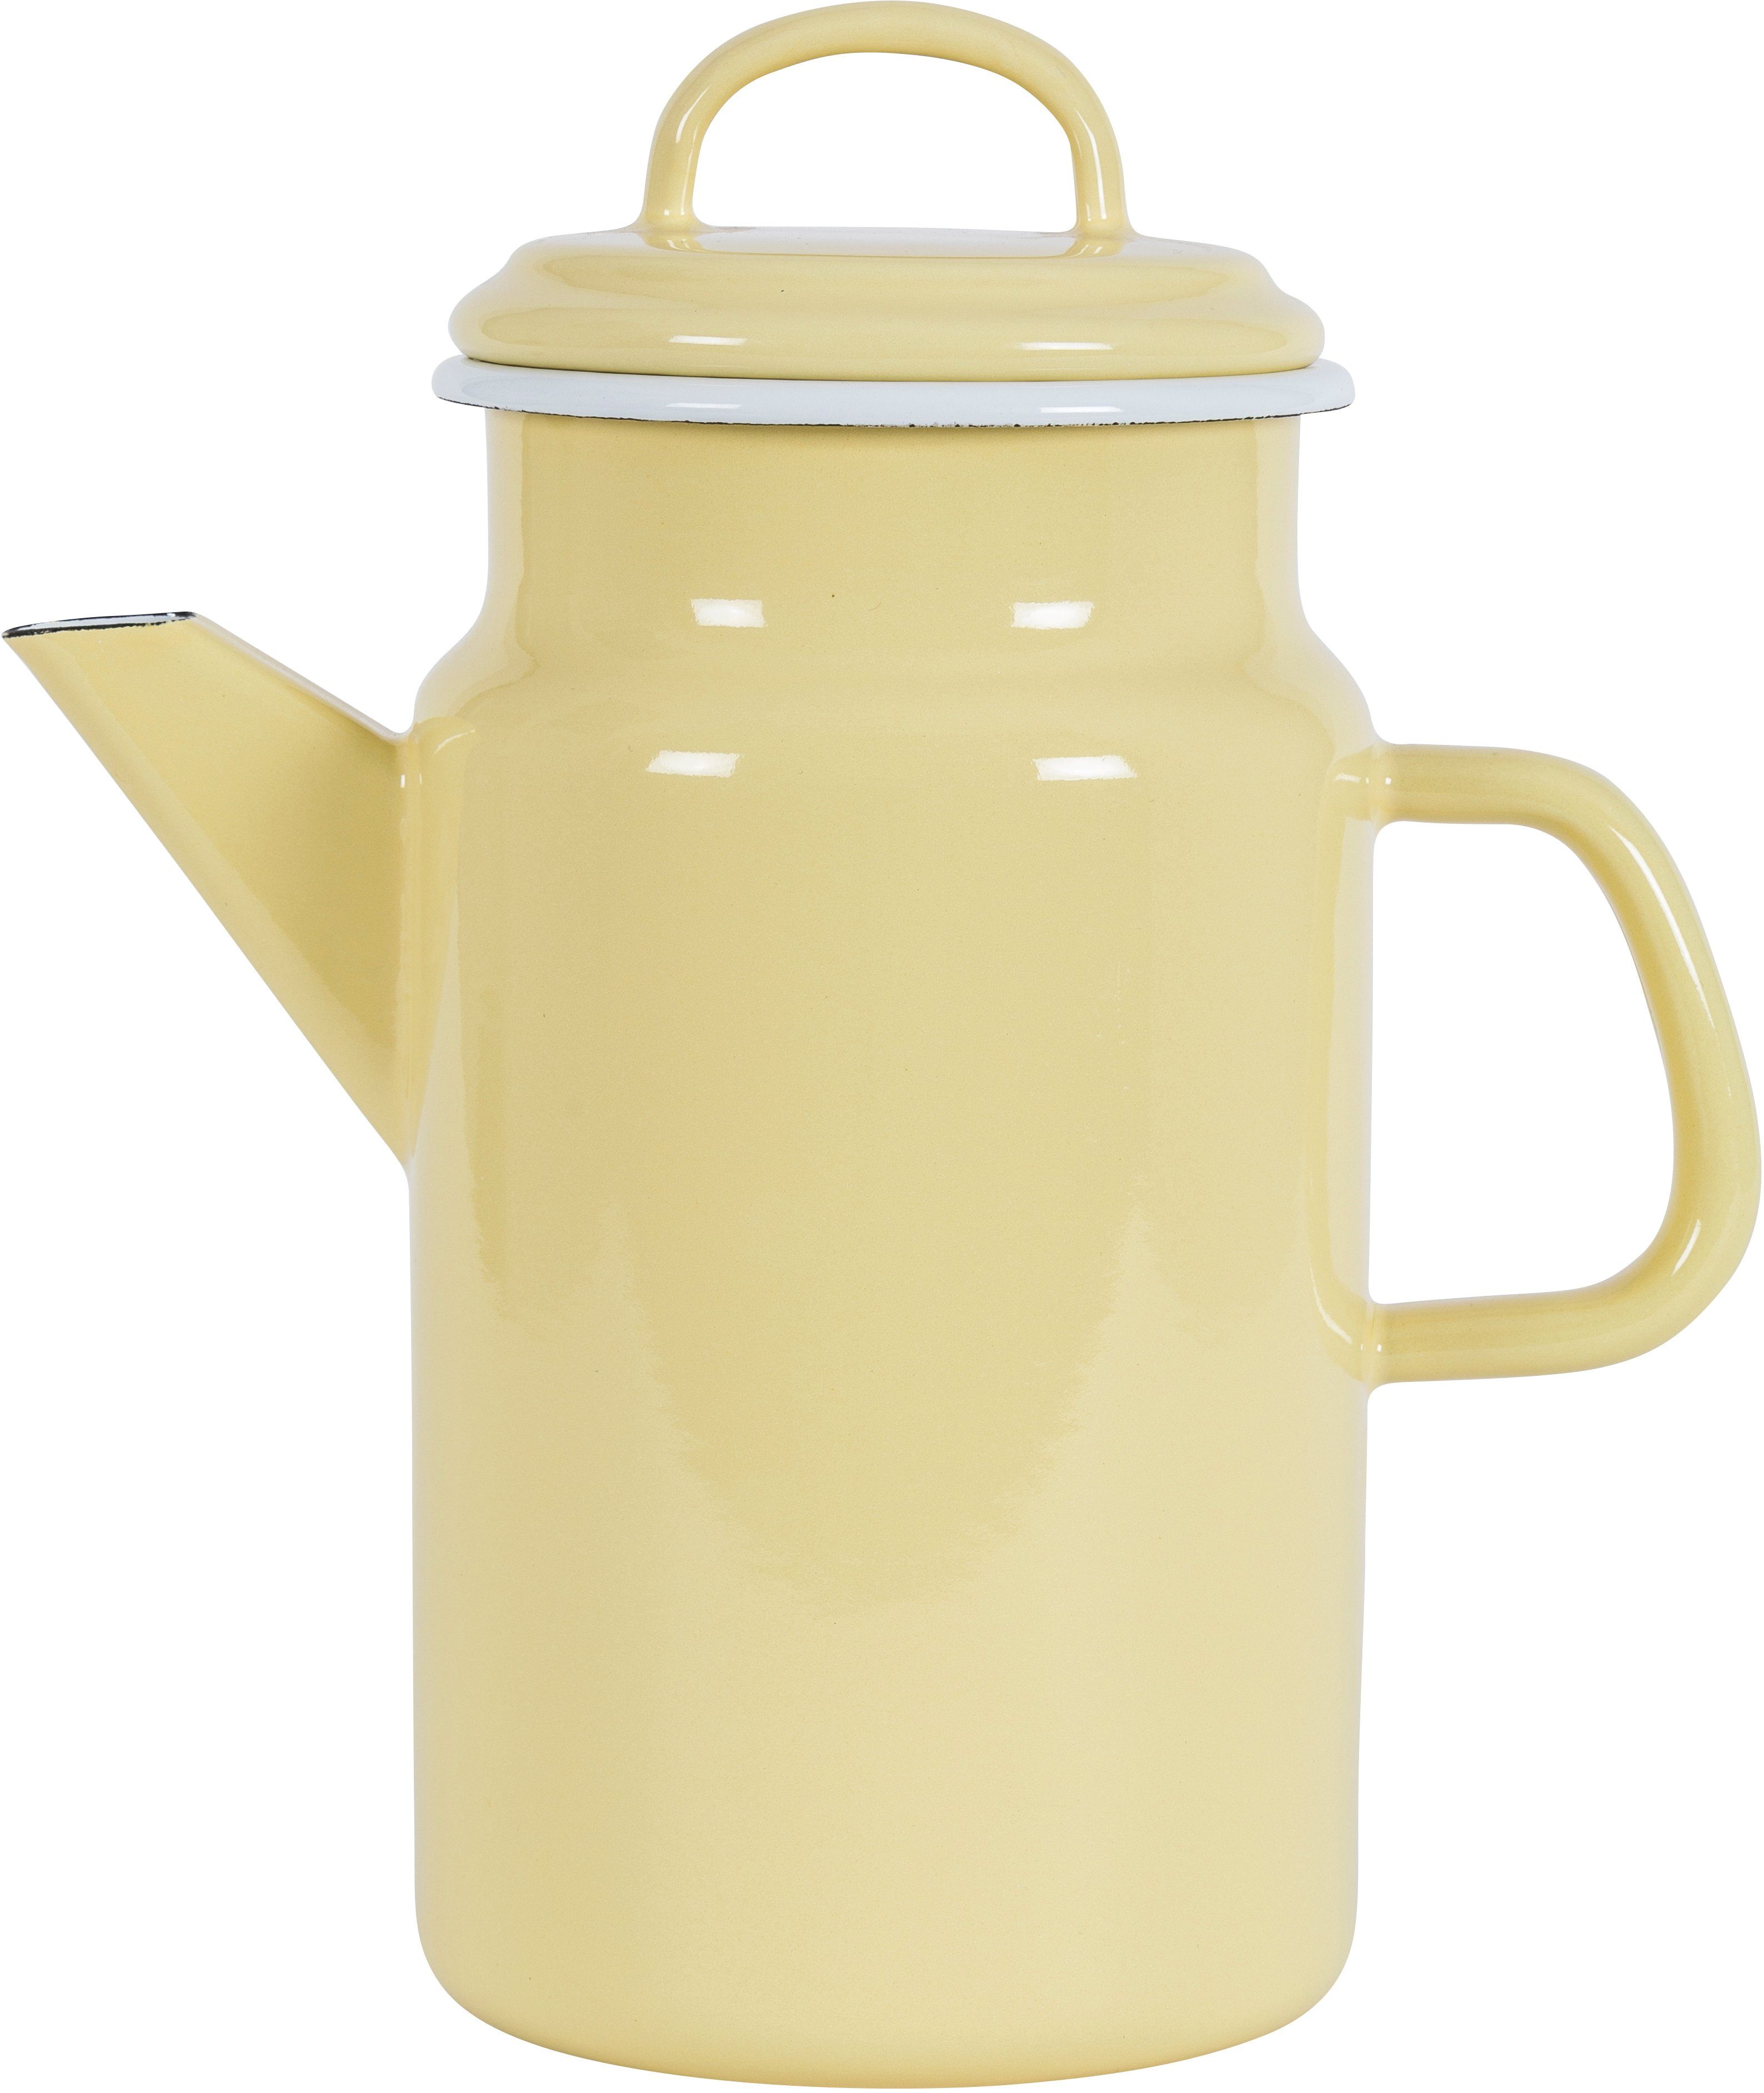 KOCKUMS® Teekanne Jernverk, 2 l, Emaille, Nachhaltigkeit und Retro-Design in einer Teekanne vereint gelb